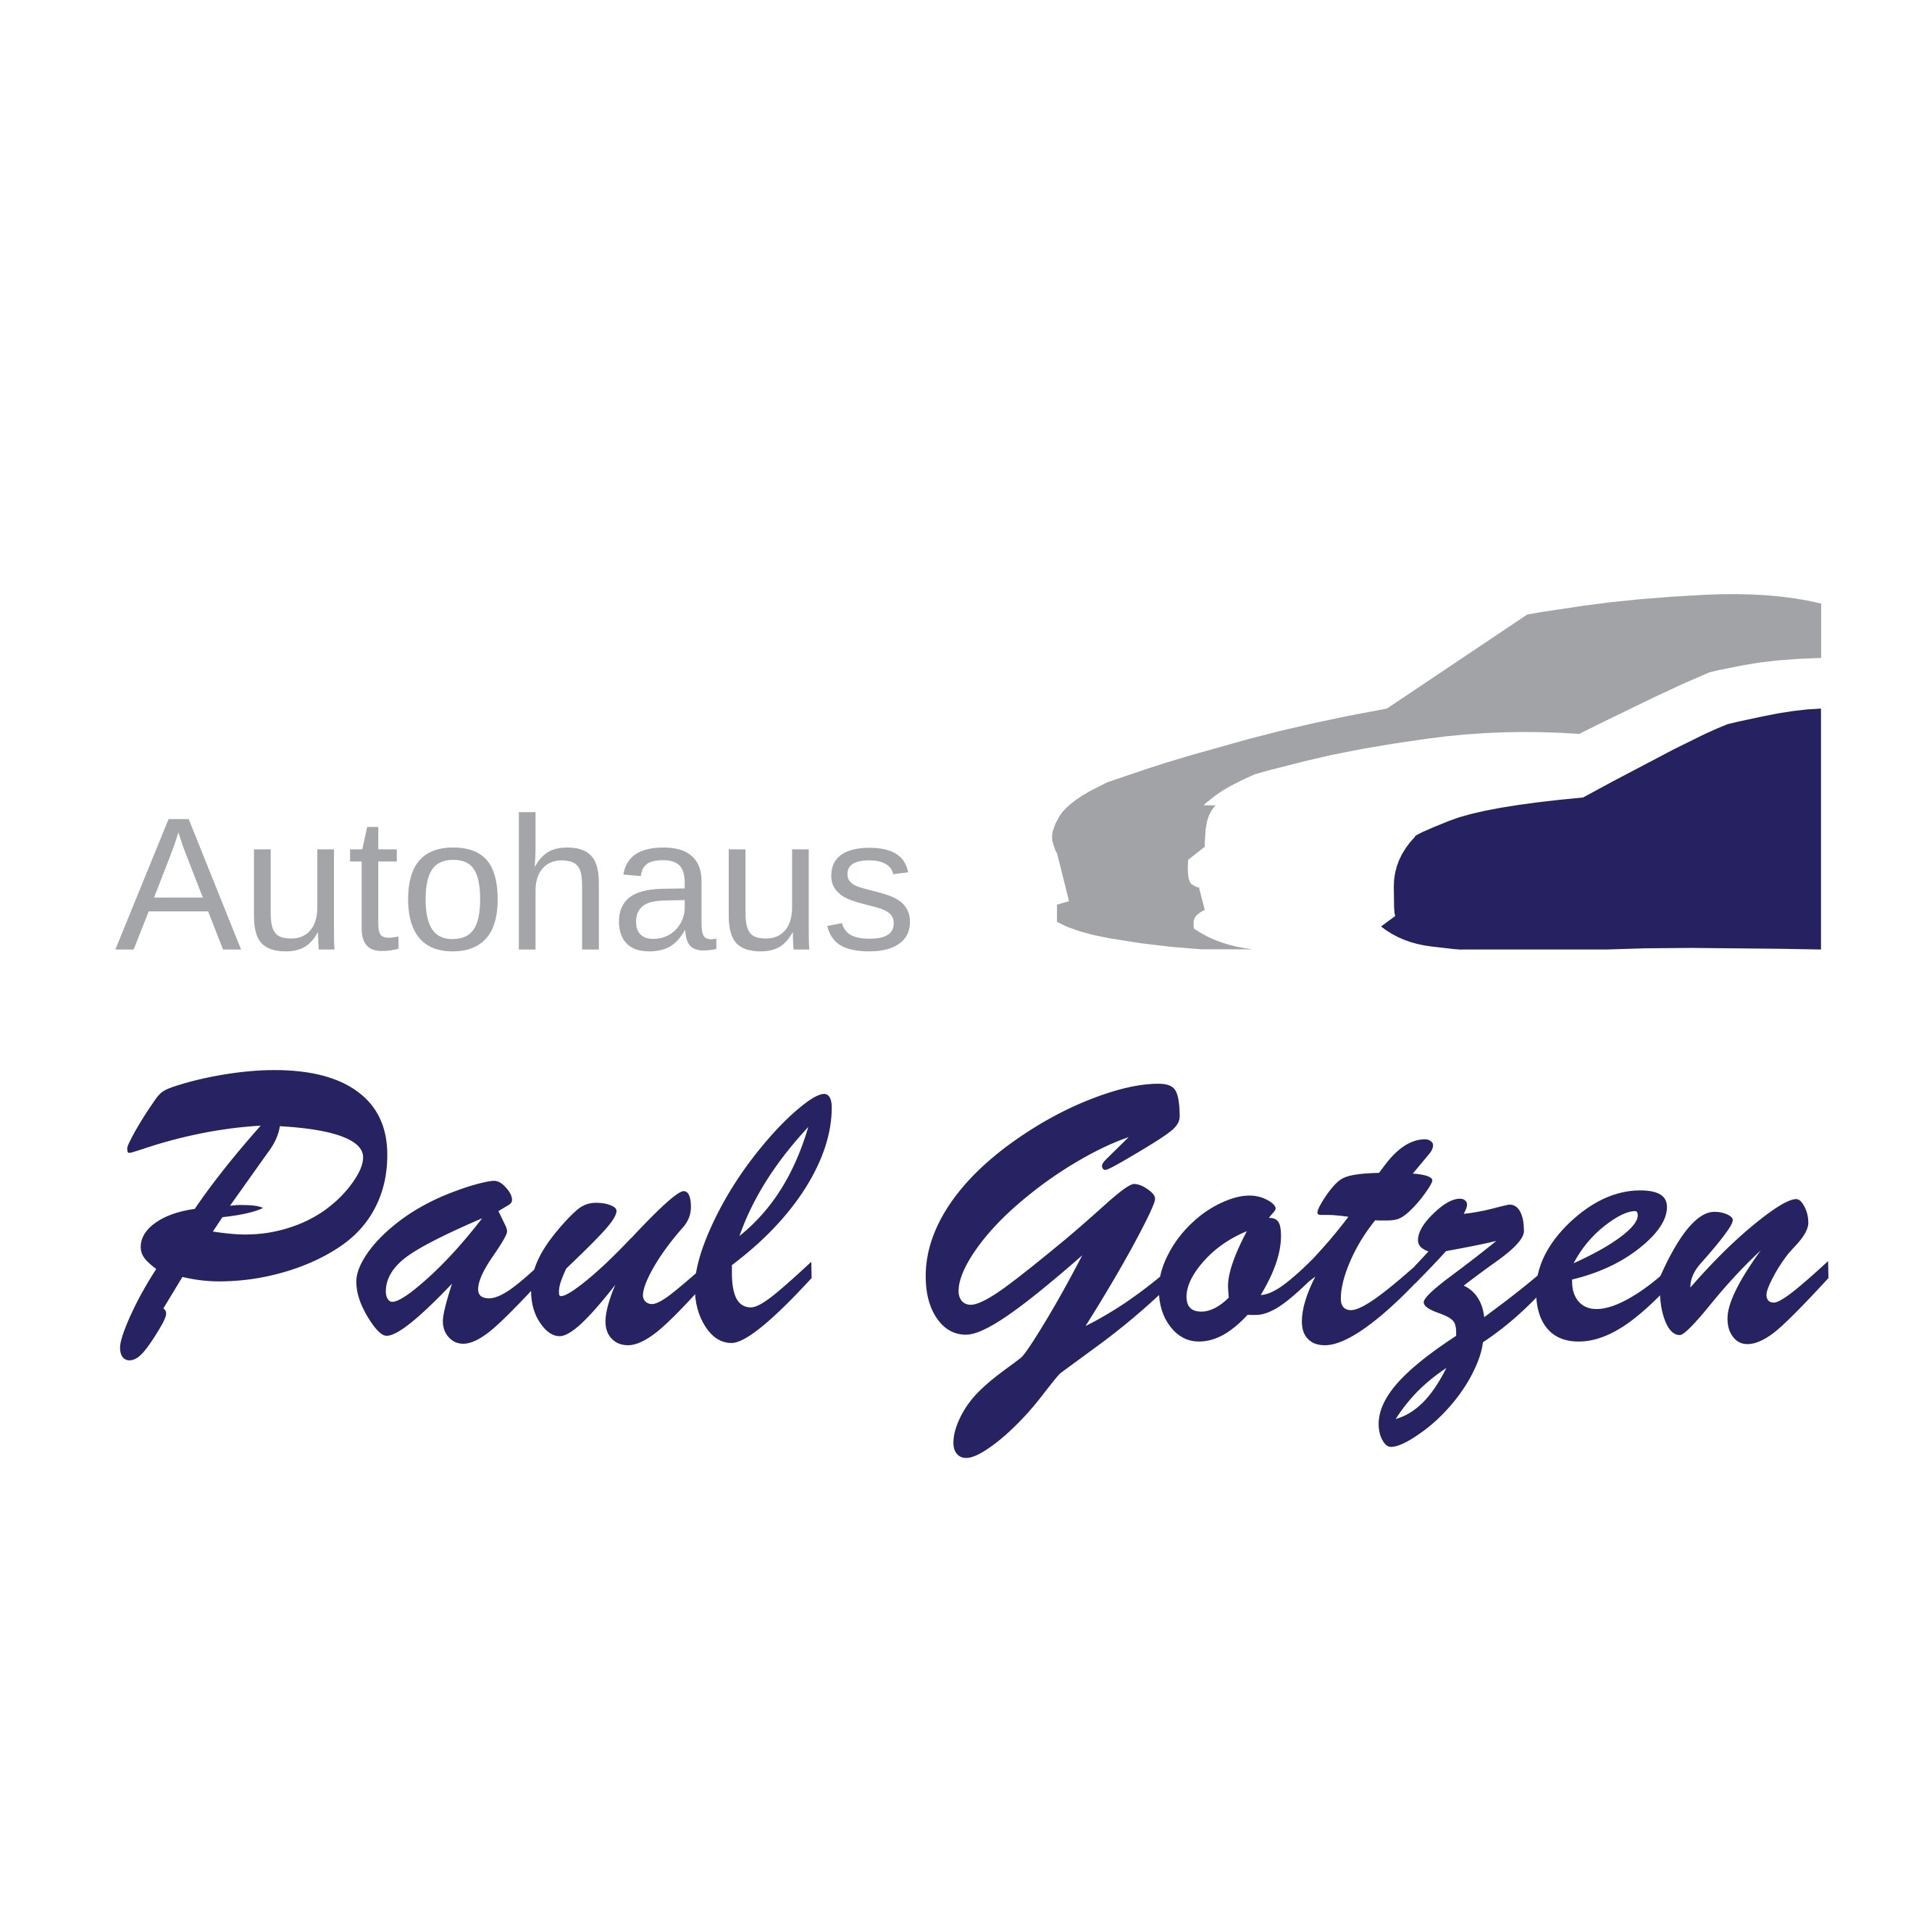 Paul Gotzen - Car Dealer - Viersen - 02162 25575 Germany | ShowMeLocal.com